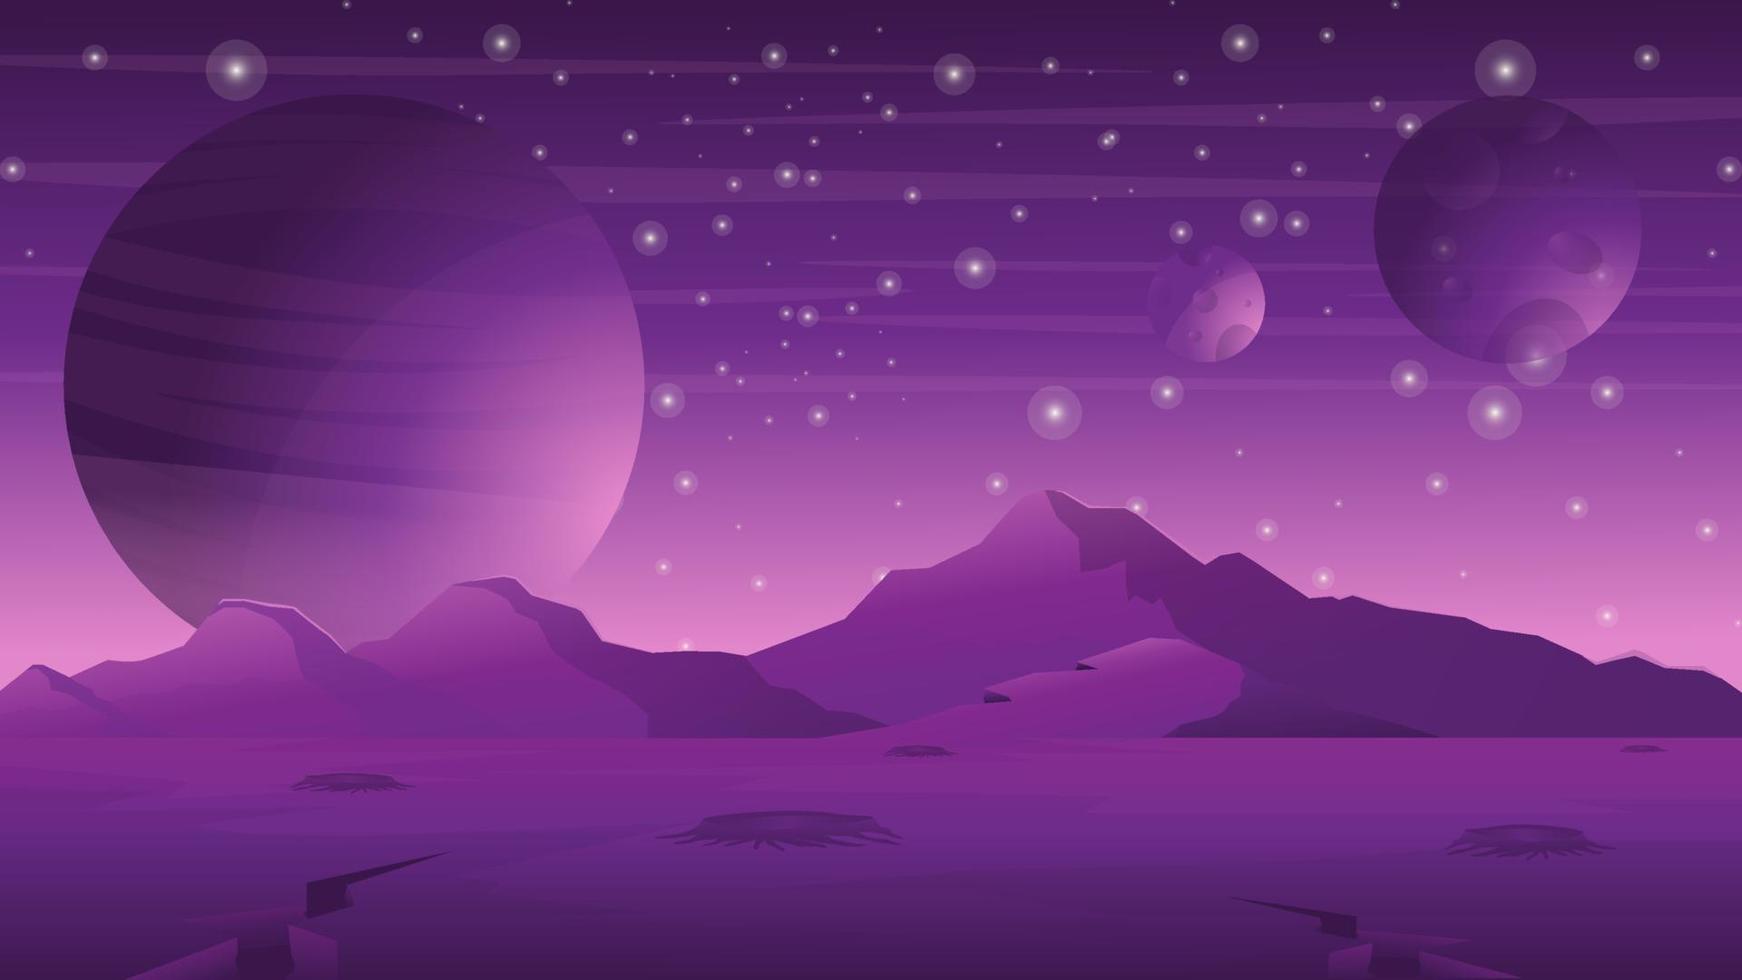 Amazing purple planet space landscape vector design illustration 8873373  Vector Art at Vecteezy